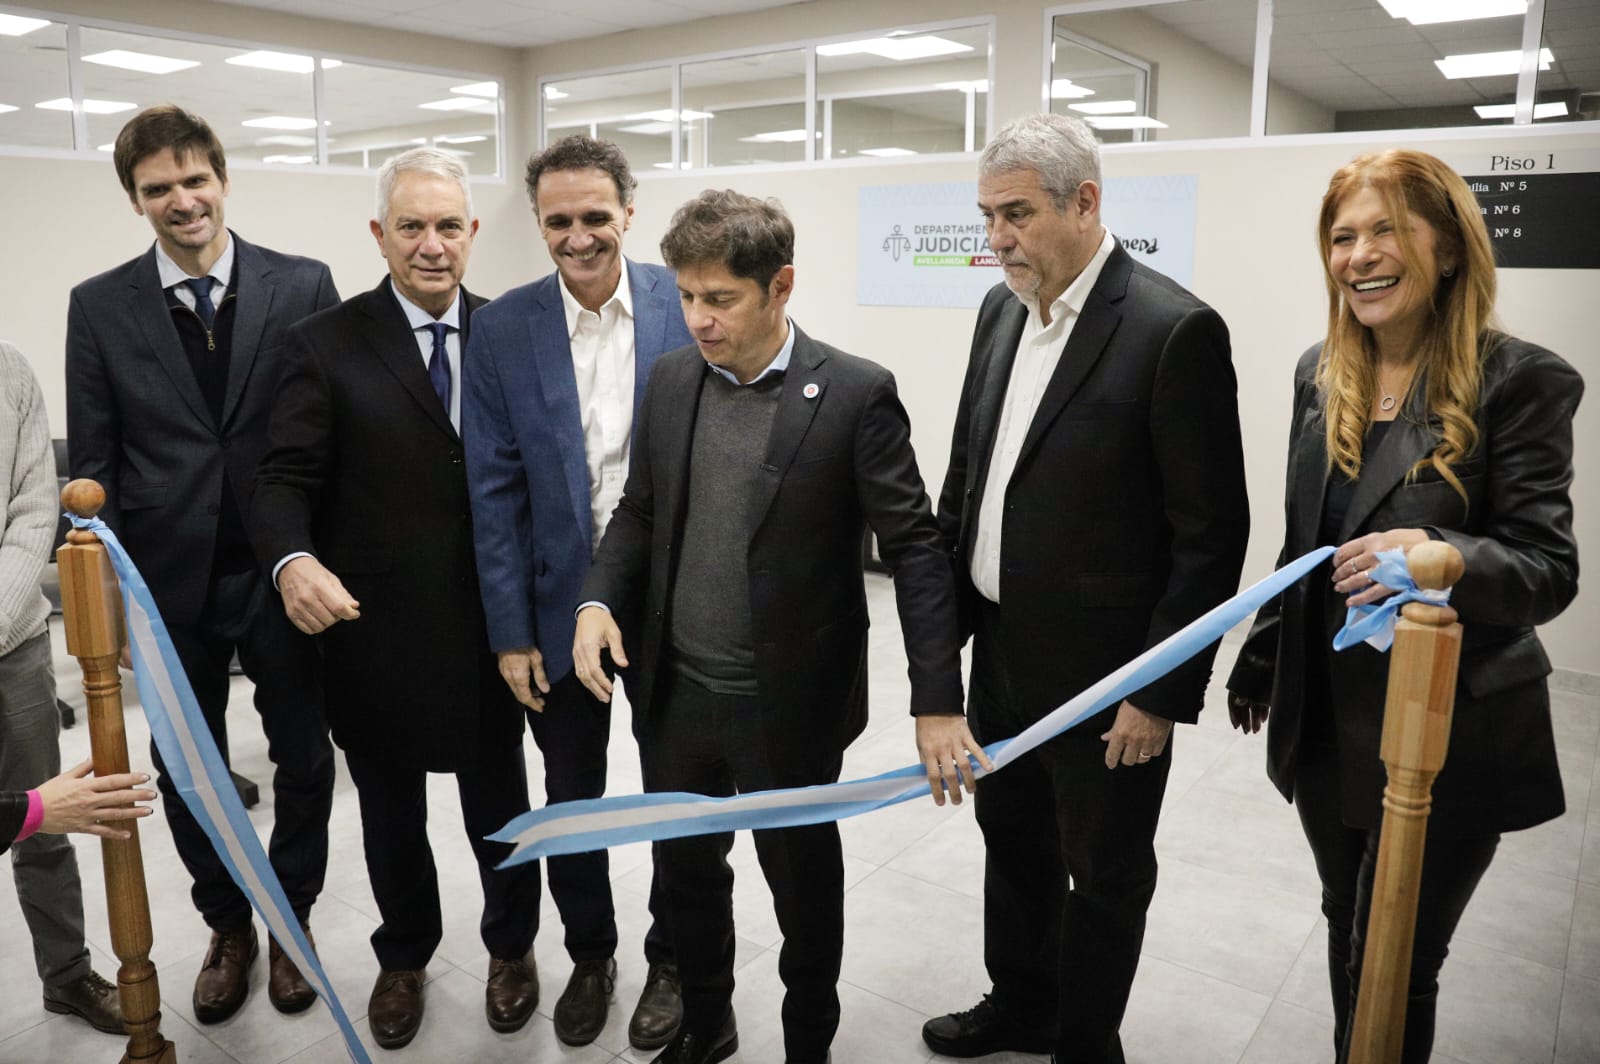 El gobernador Kicillof inauguró tres nuevos juzgados de familia en Avellaneda